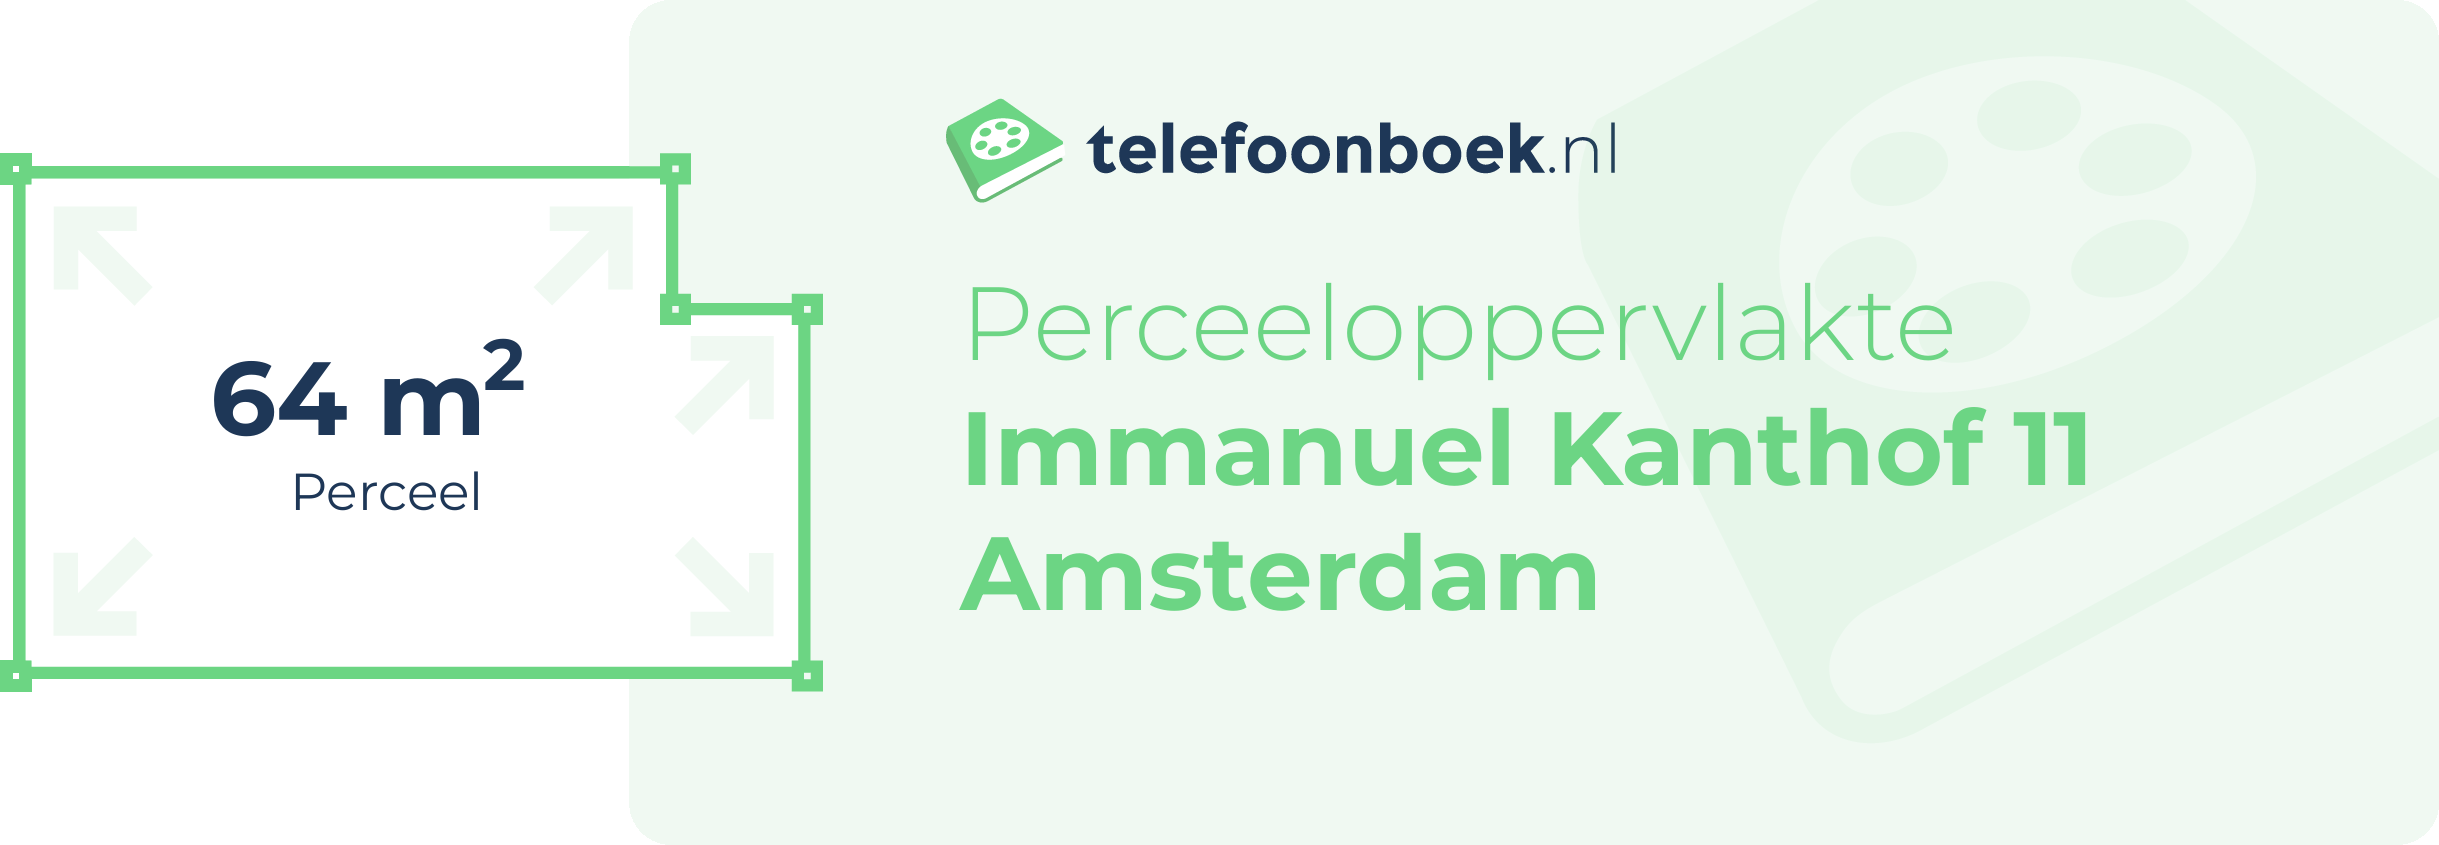 Perceeloppervlakte Immanuel Kanthof 11 Amsterdam